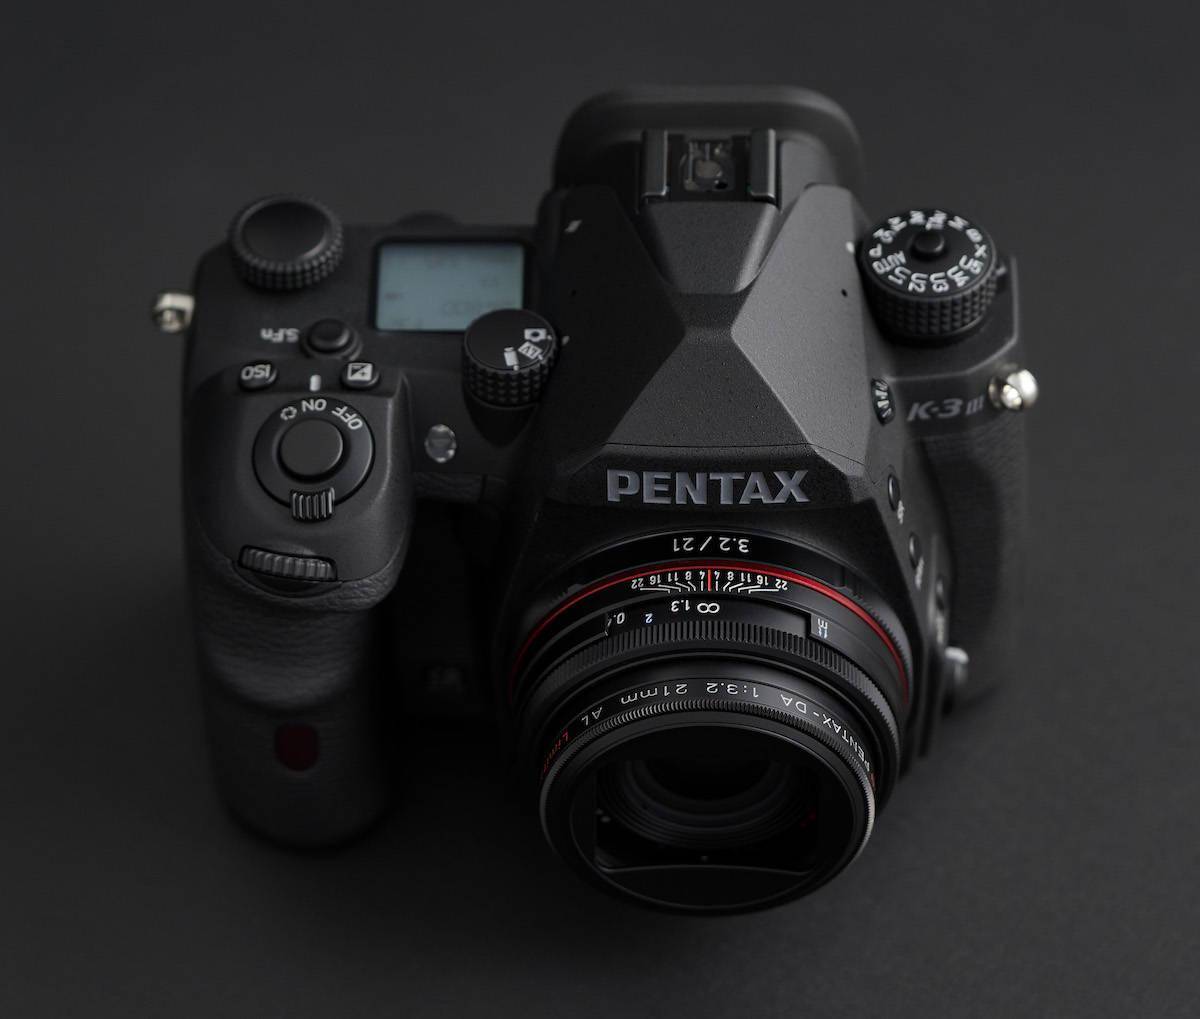 宾得推出K-3III黑白相机20-40 Limited套机 只能拍黑白照片和视频